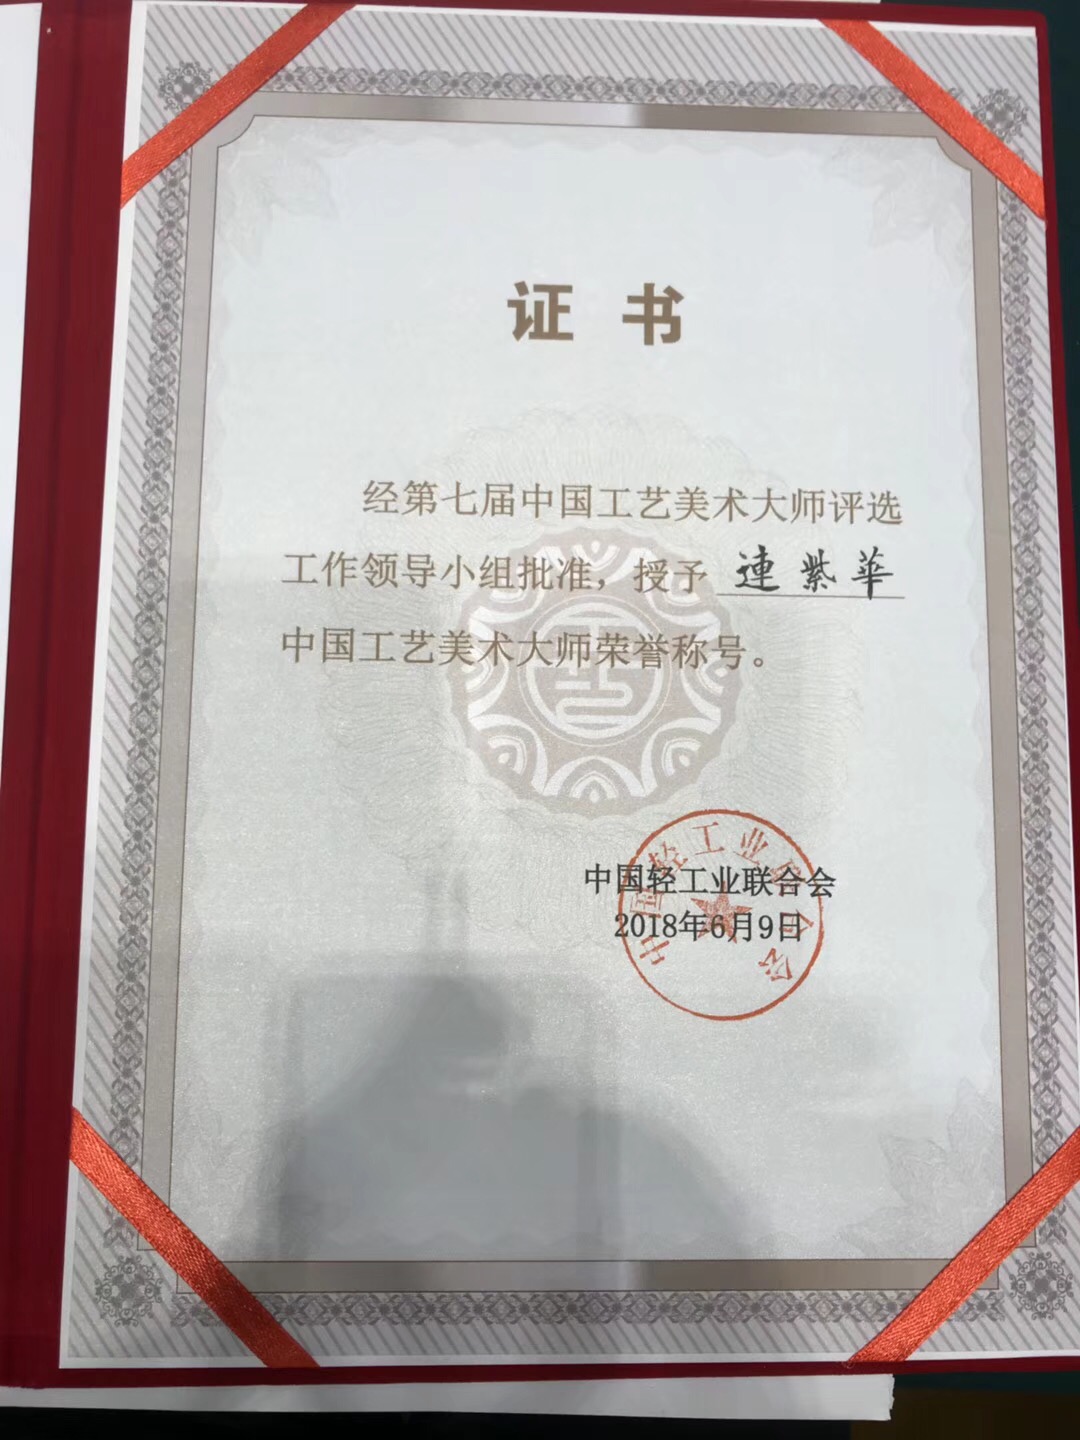 县的连紫华先生被评为中国工艺美术大师荣誉称号,并颁发荣誉证书